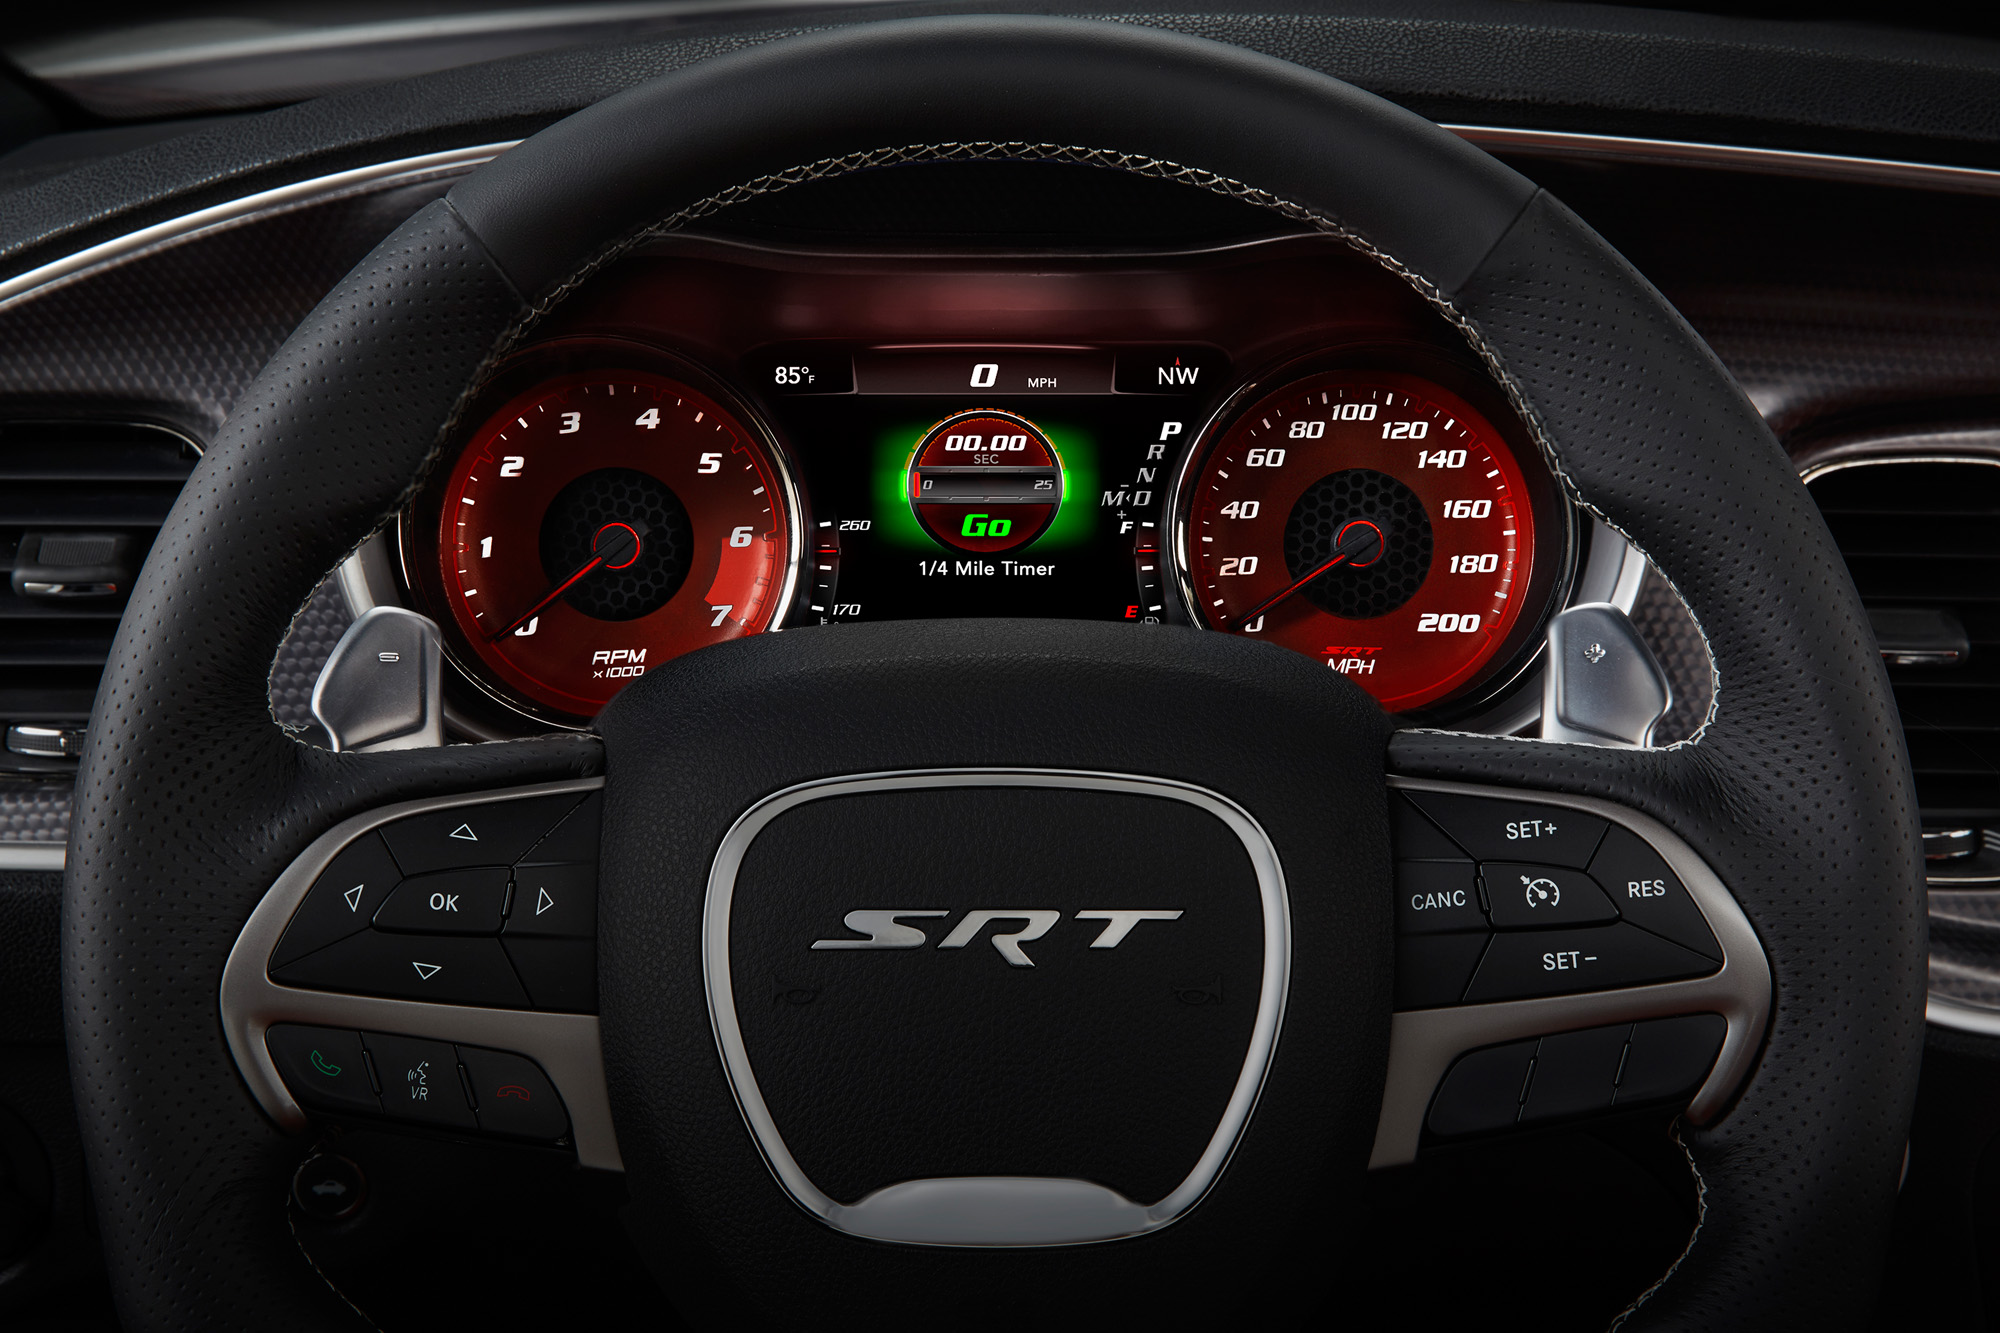 2015 Dodge Charger SRT - quarter mile Timer GO screen